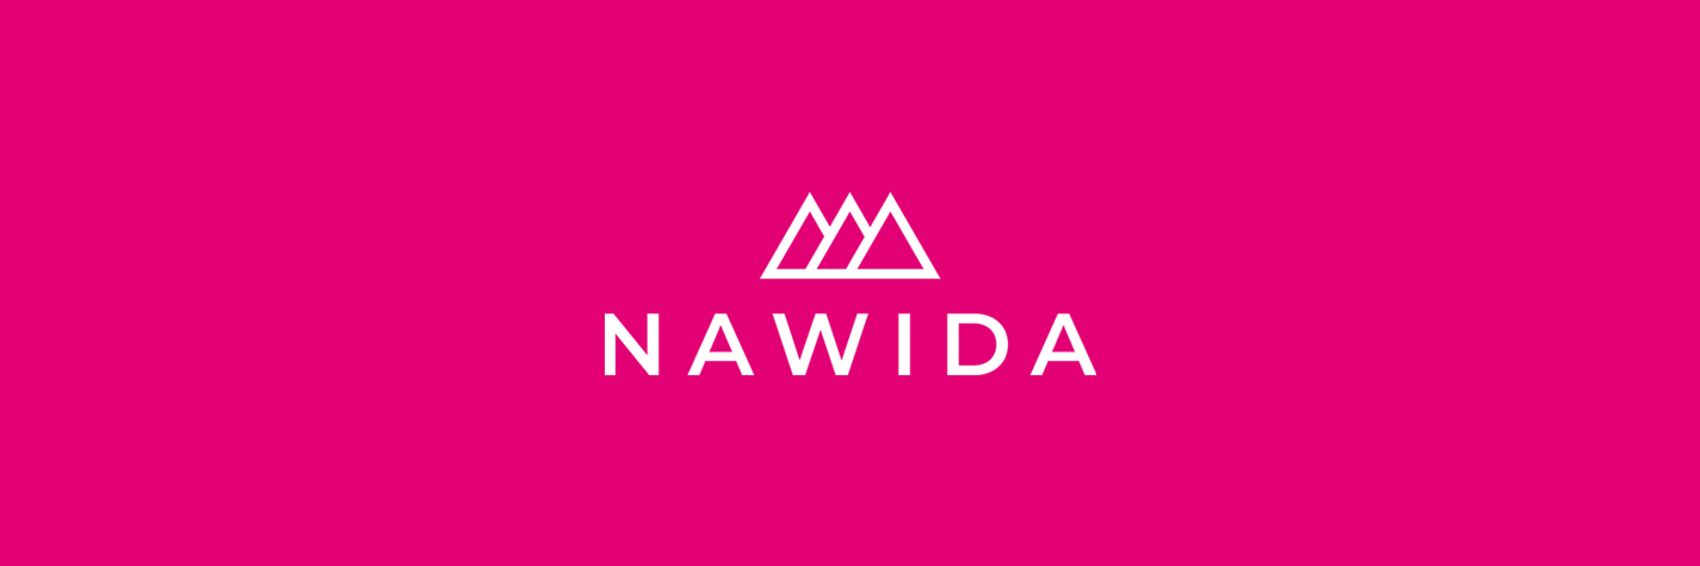 Logo der NAWIDA GmbH mit magenta 